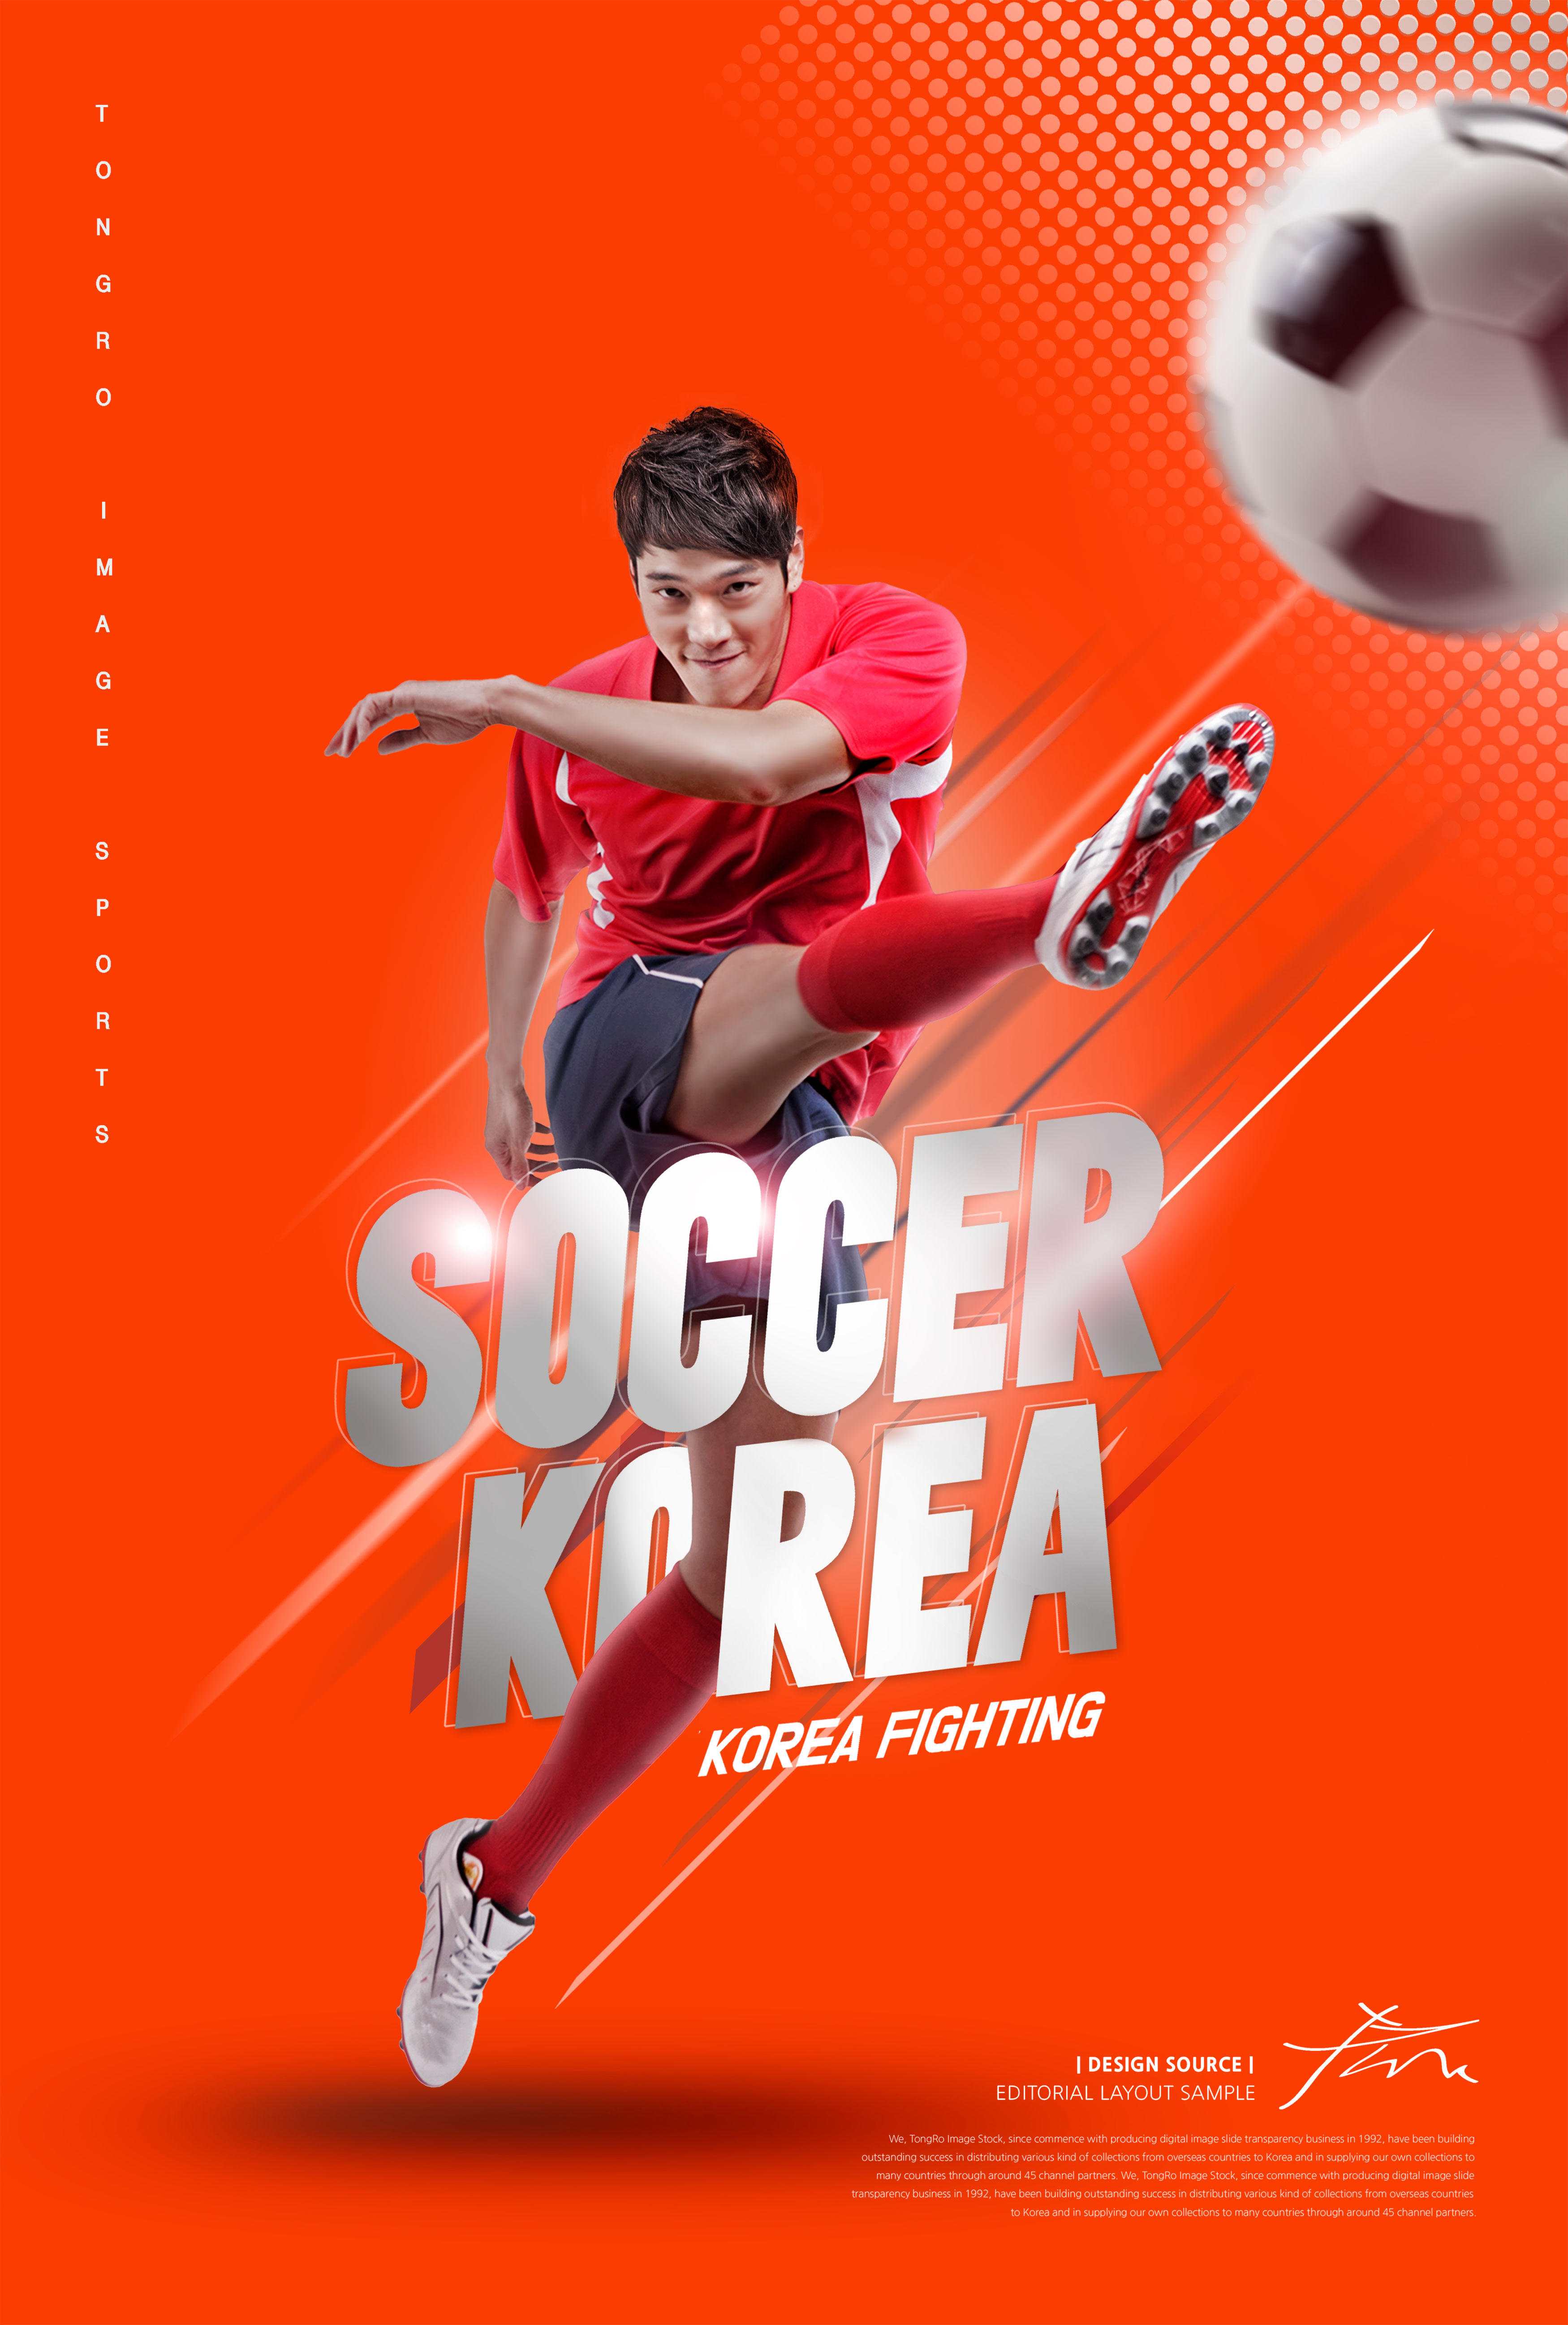 足球体育运动比赛海报PSD素材16图库精选psd模板插图